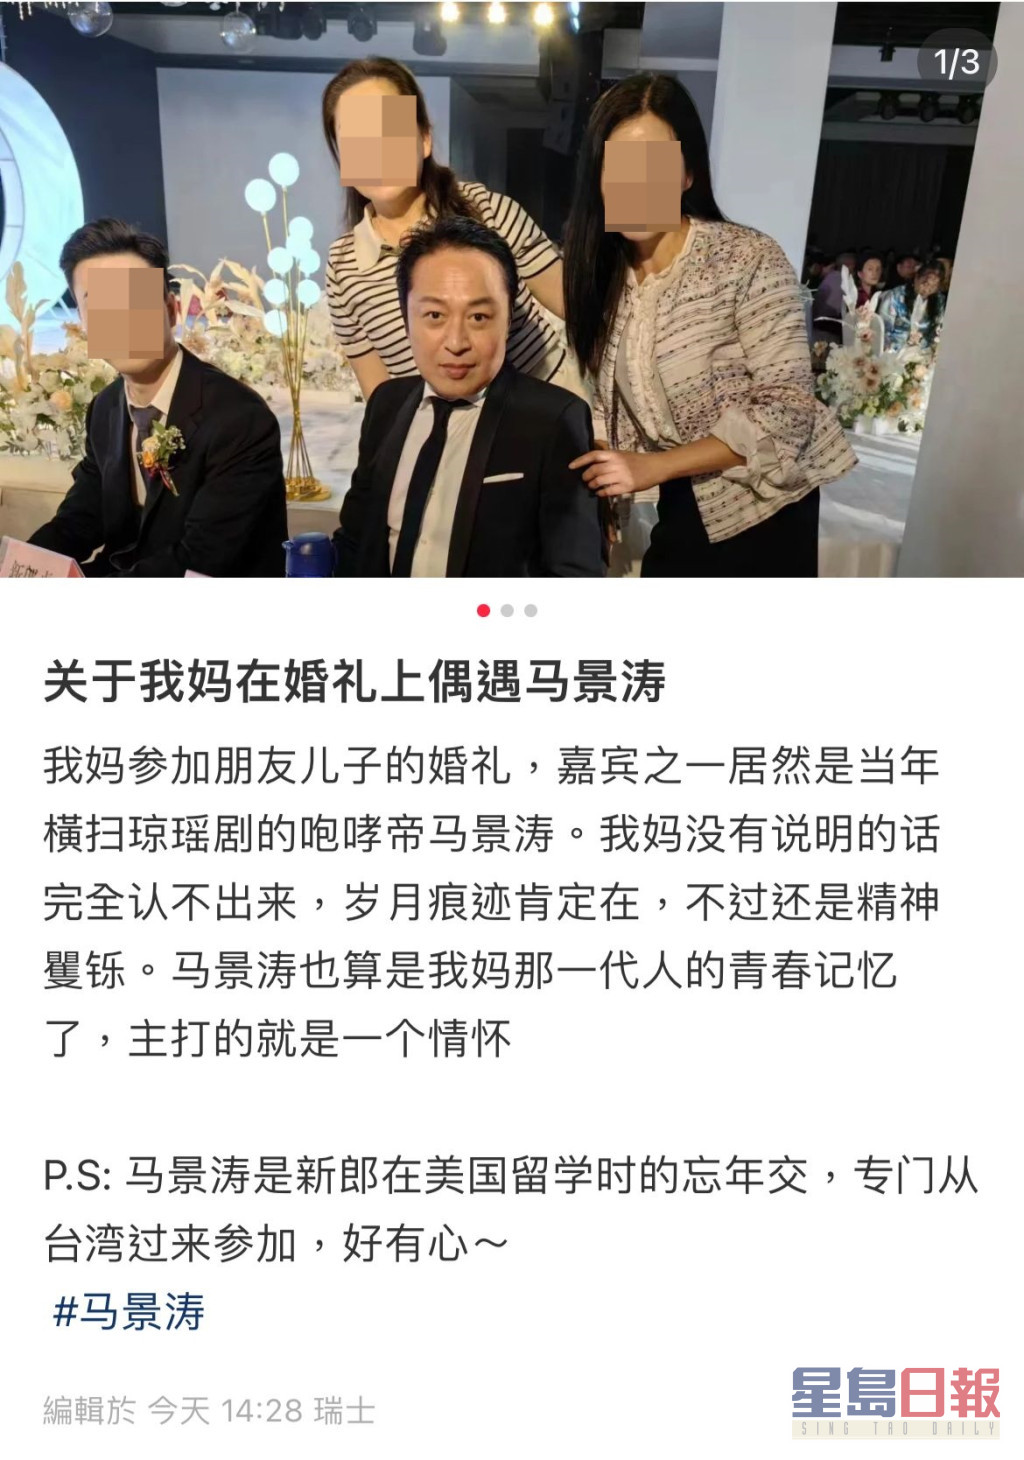 网民透露新郎是马景涛在美国留学时的忘年交，此趟特意从台湾飞抵当地观礼，席间也有献唱。